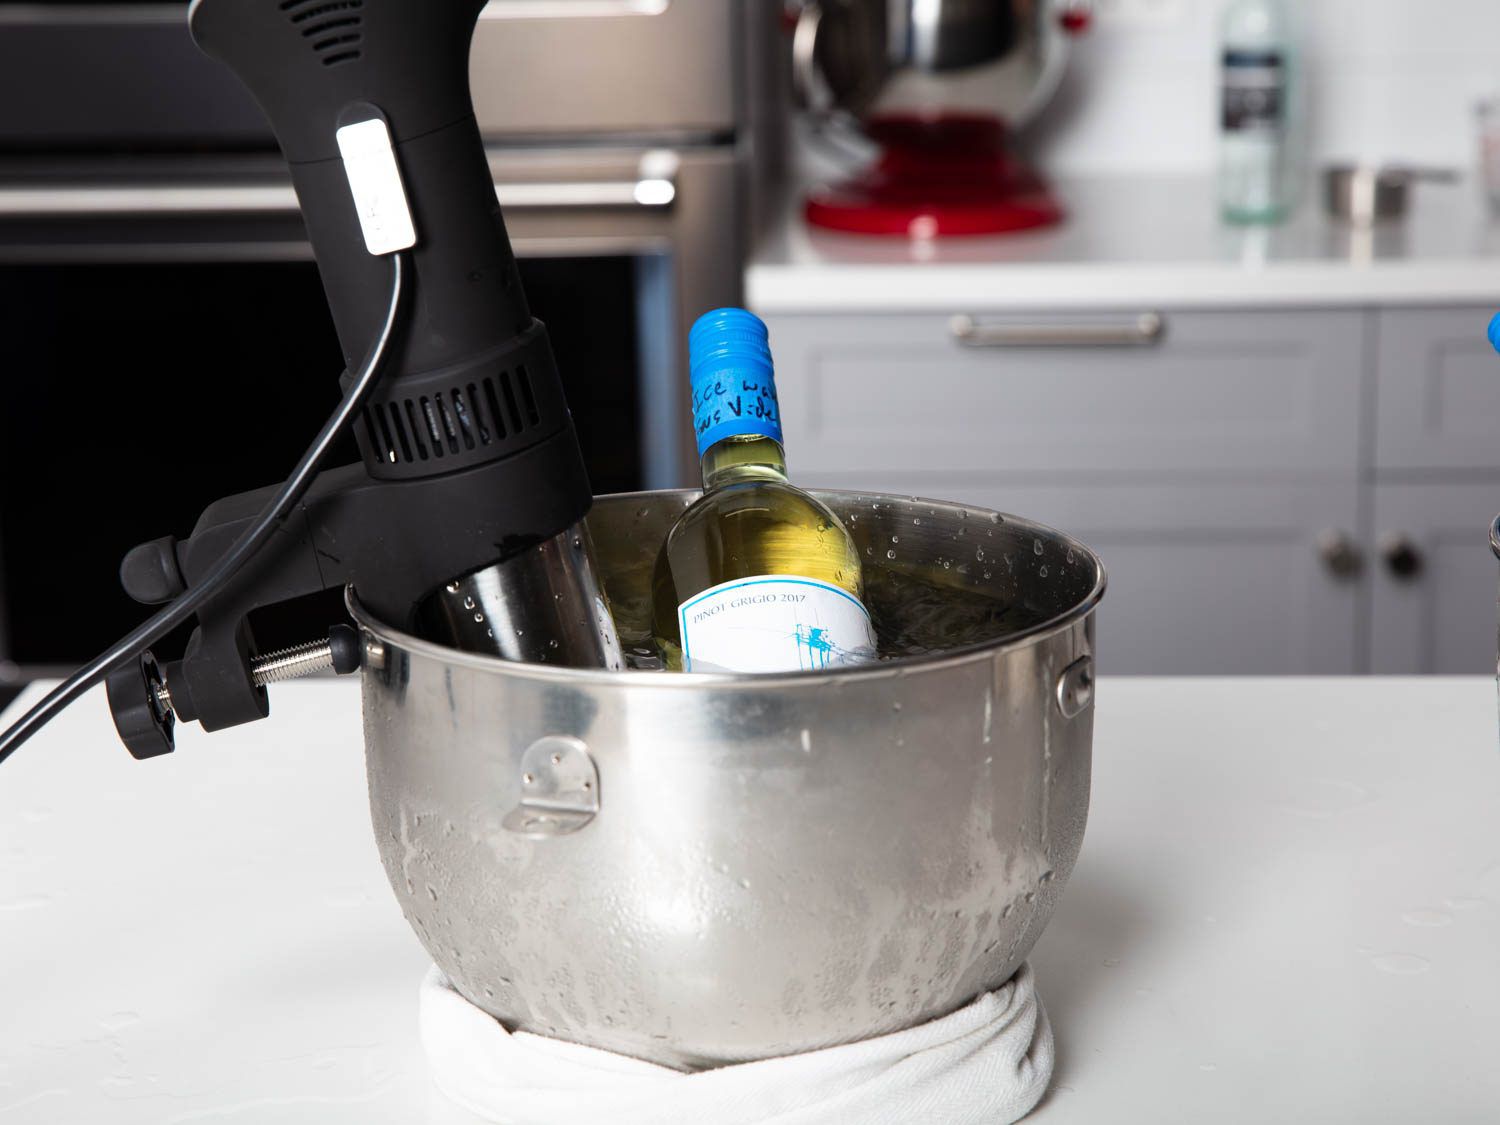 装有浸没式循环器的立式搅拌碗中的一瓶白葡萄酒